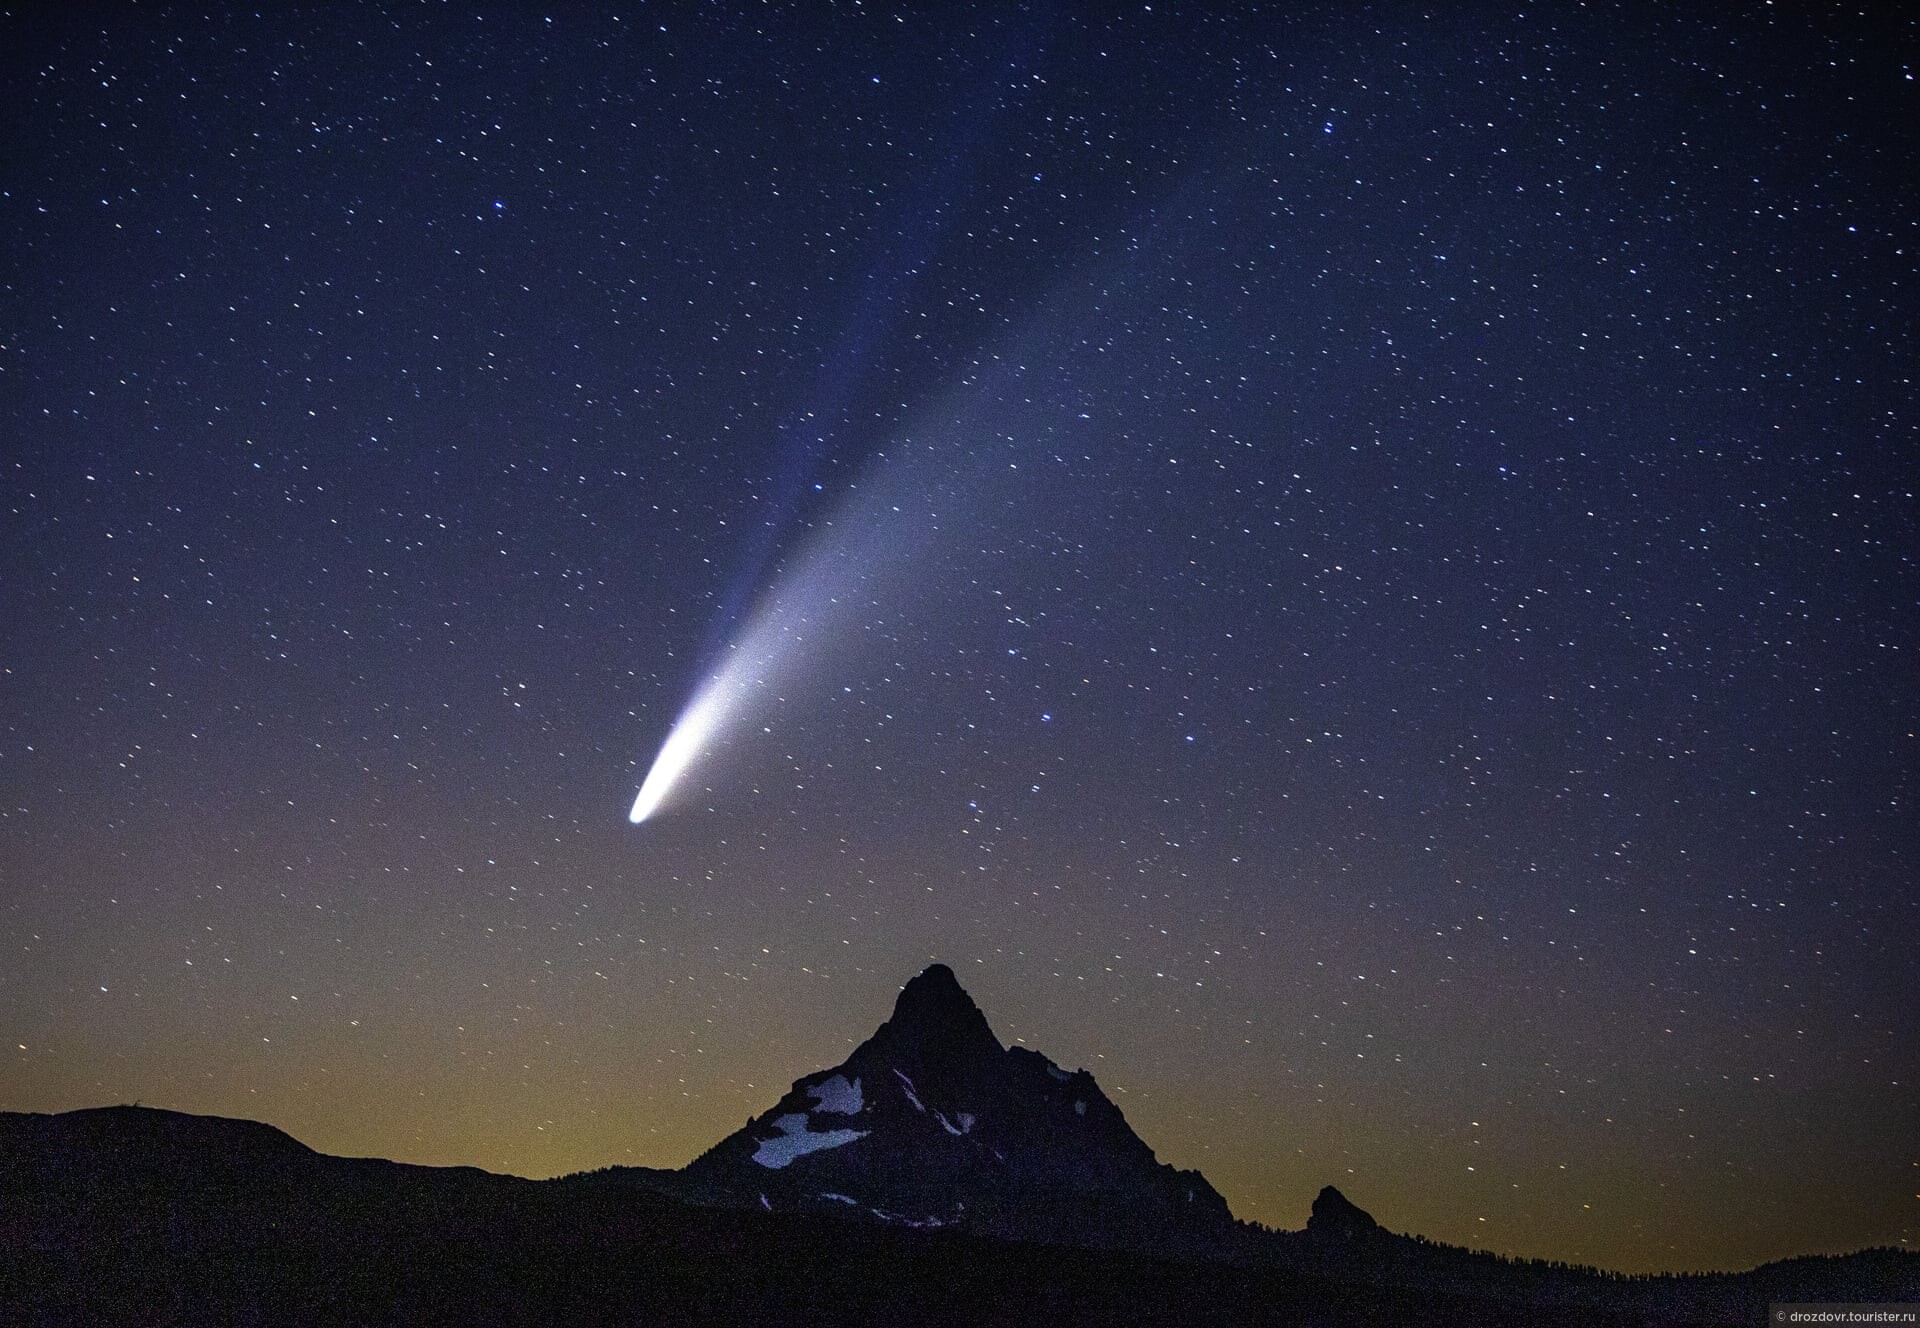 Ученые обнаружили пылевой след кометы в виде песочных часов